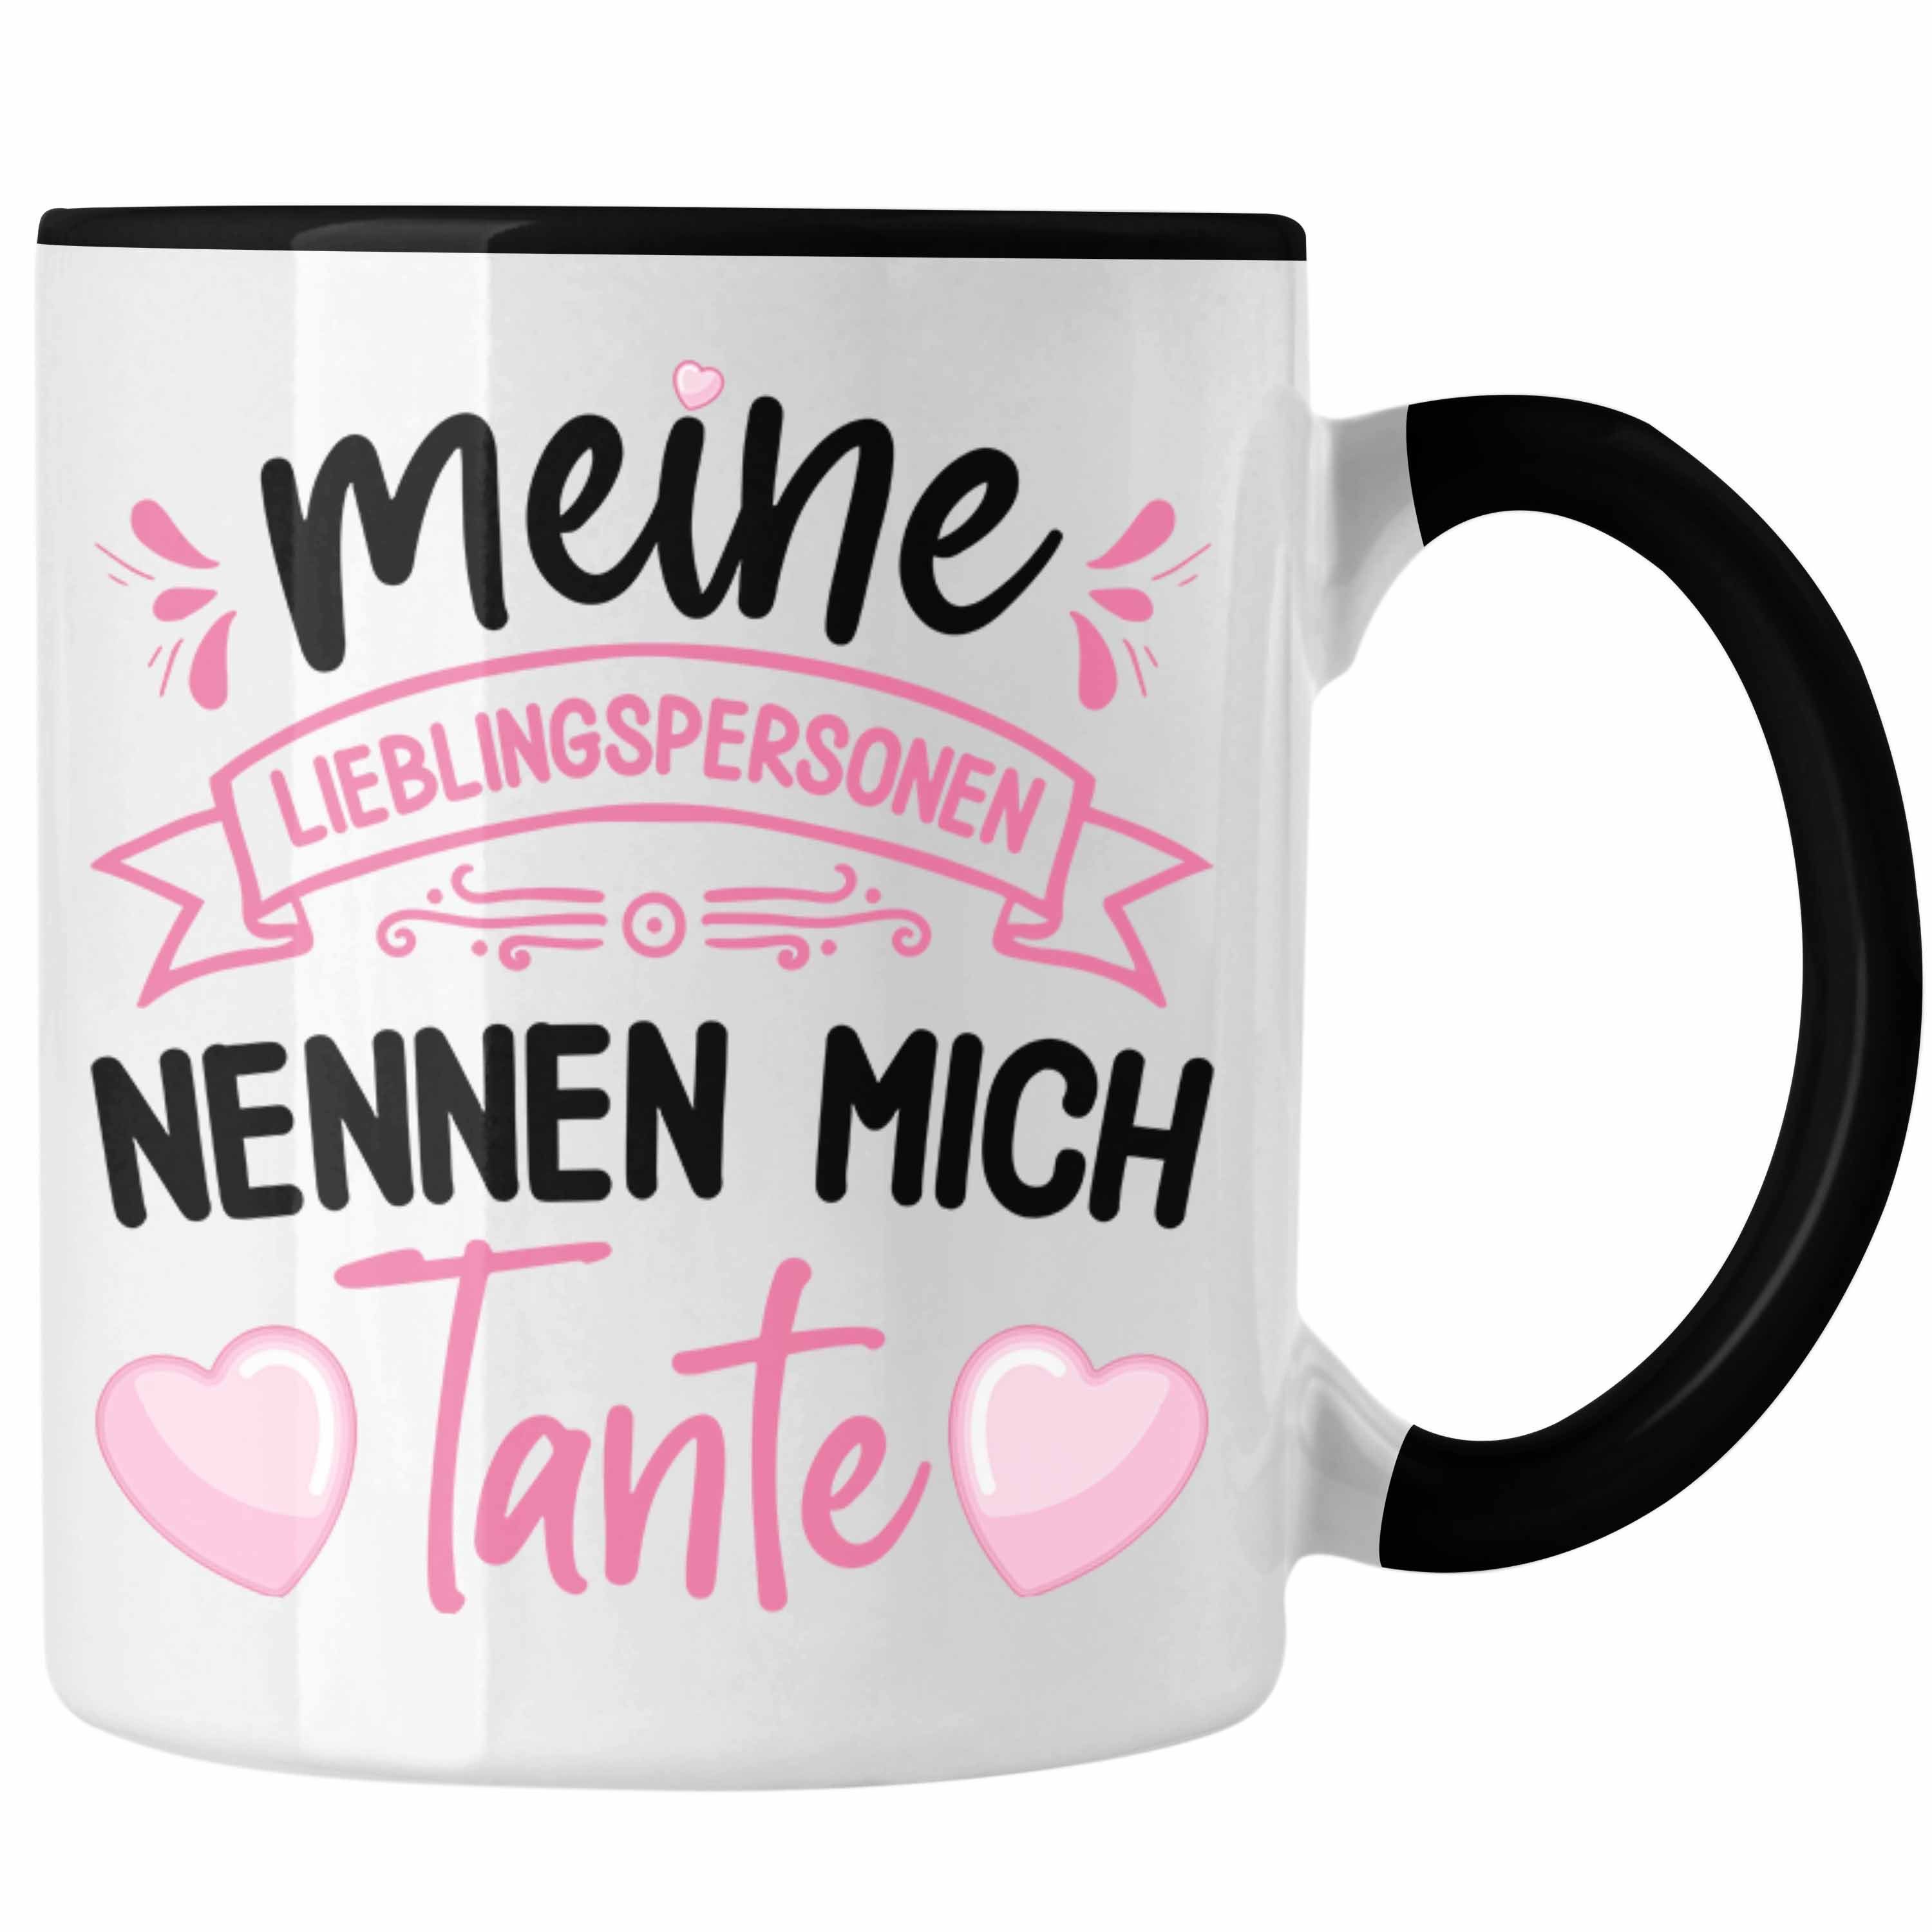 Trendation Tasse Trendation - Tante Geschenk Tasse Spruch Lustig Geschenkidee für Tante Geburtstag Weihnachten Schwarz